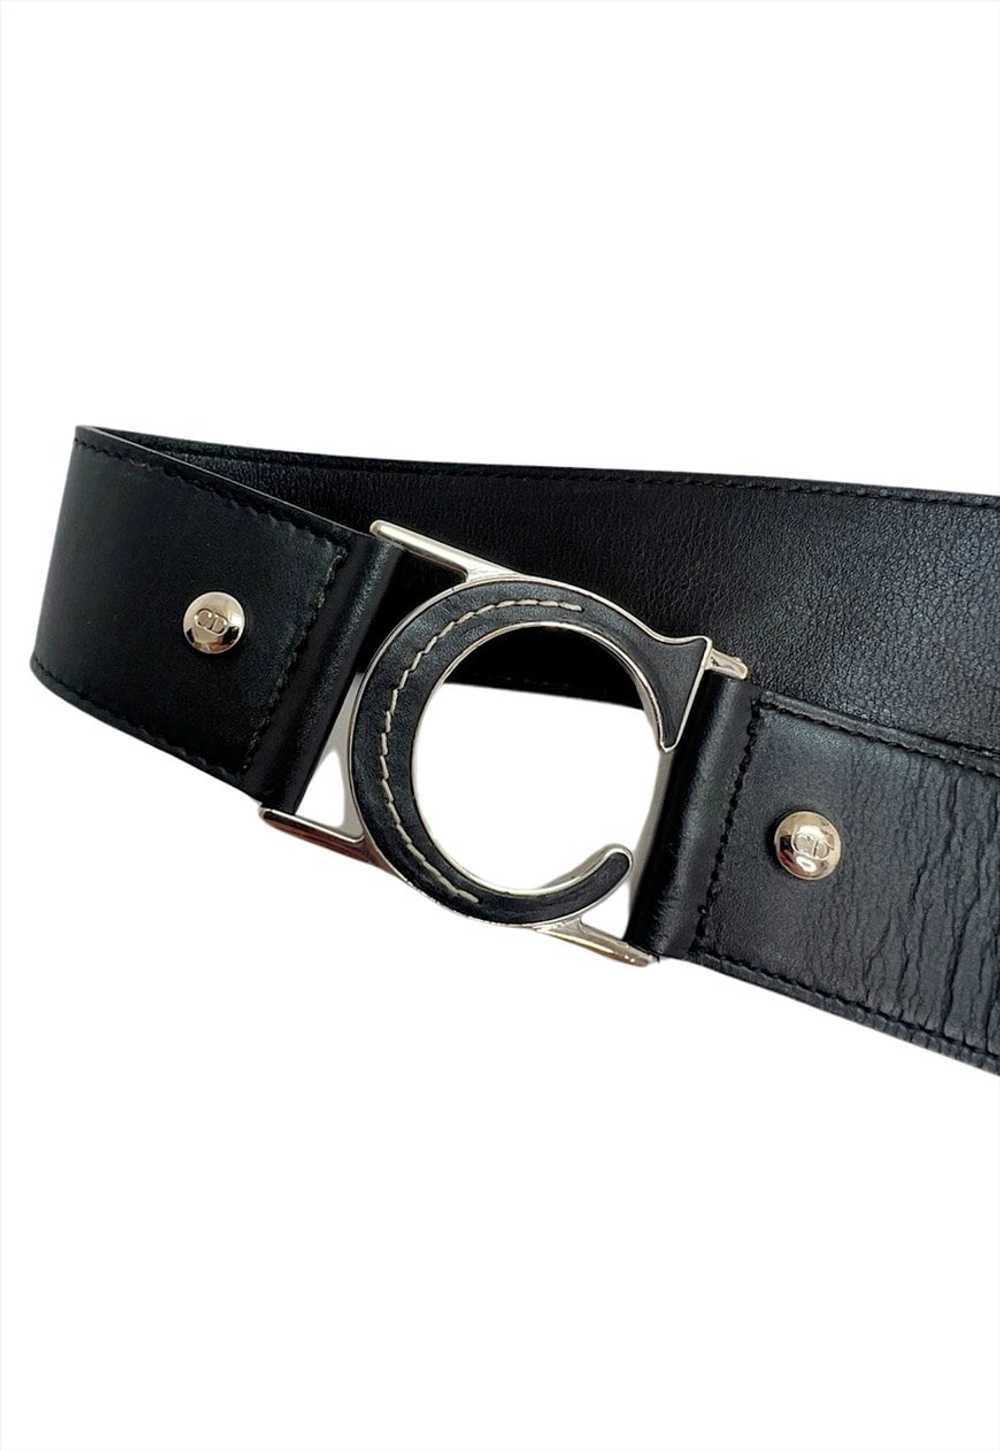 Christian Dior Belt Black Leather C D Buckle Logo… - image 3